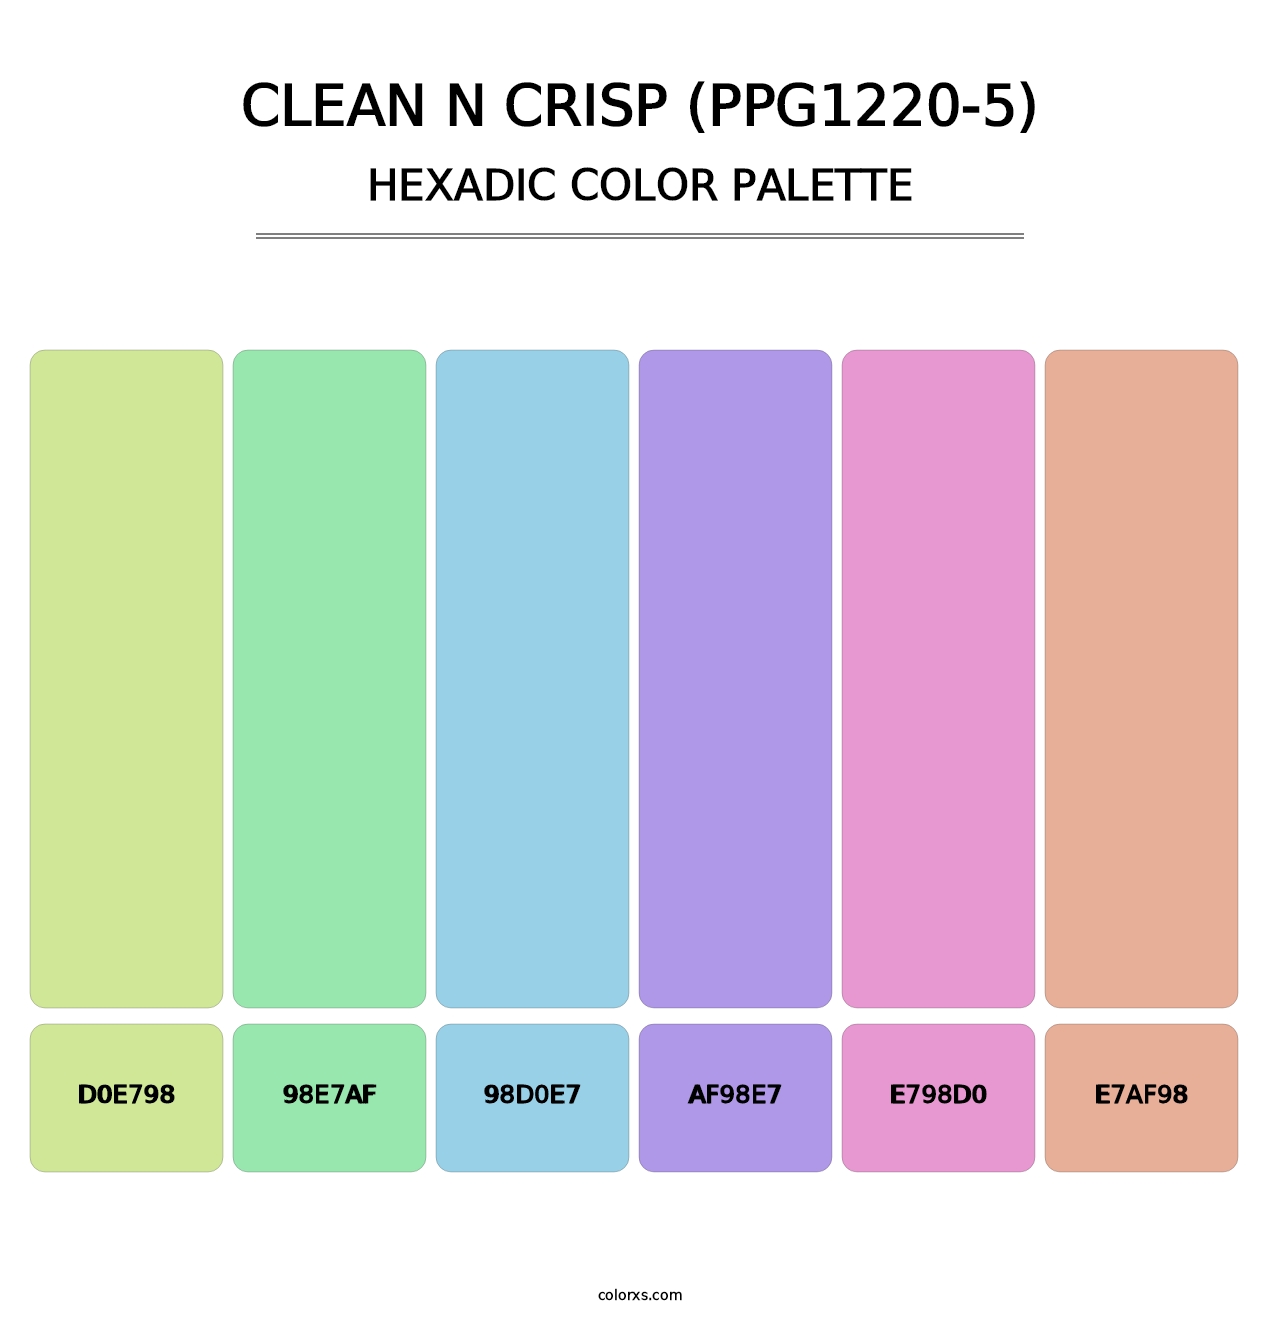 Clean N Crisp (PPG1220-5) - Hexadic Color Palette